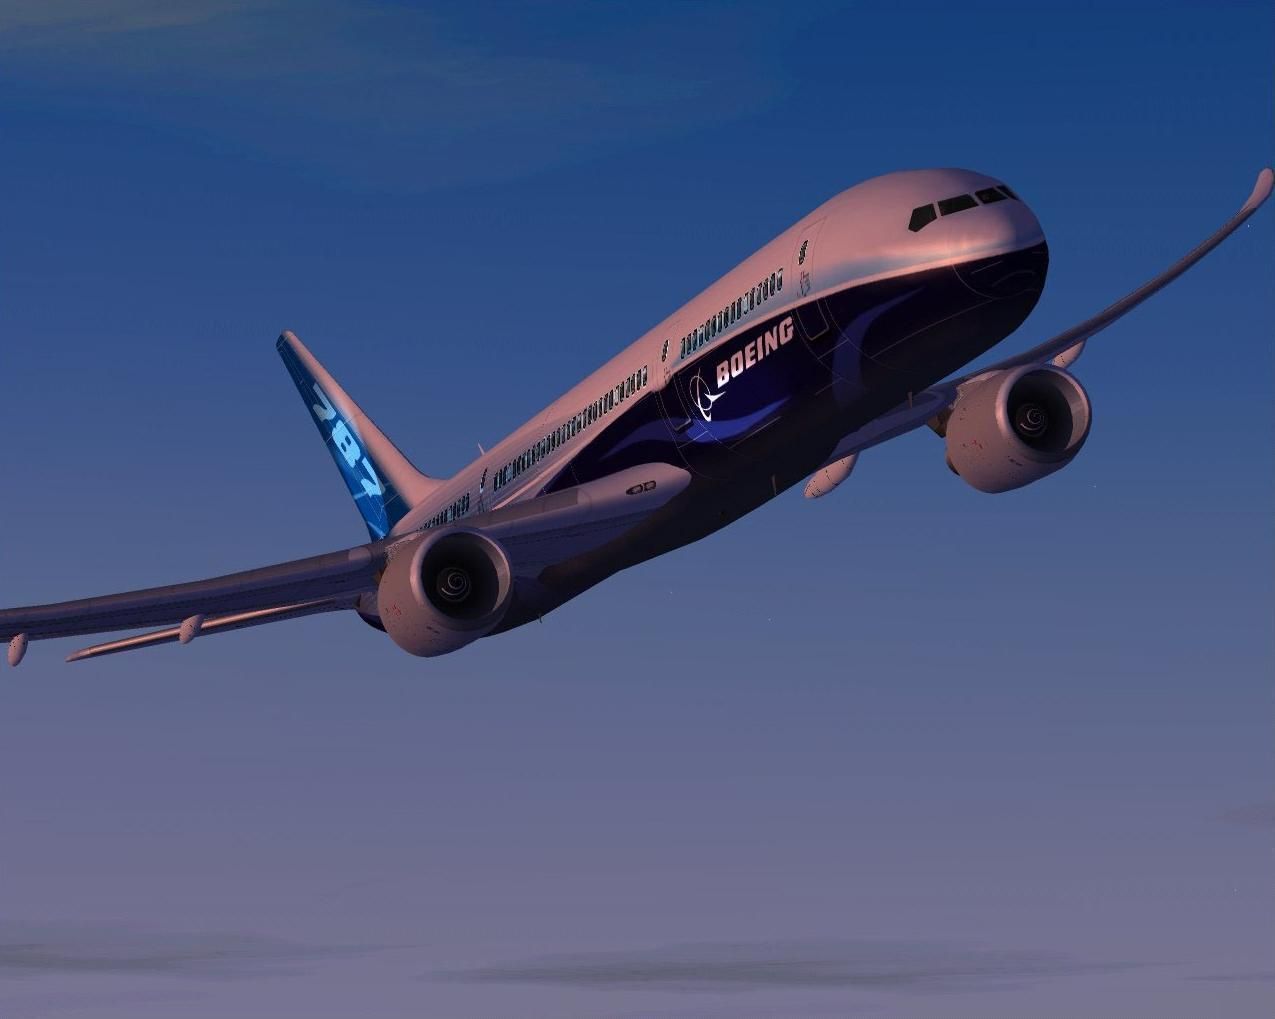 Boeing 787 - Dreamliner